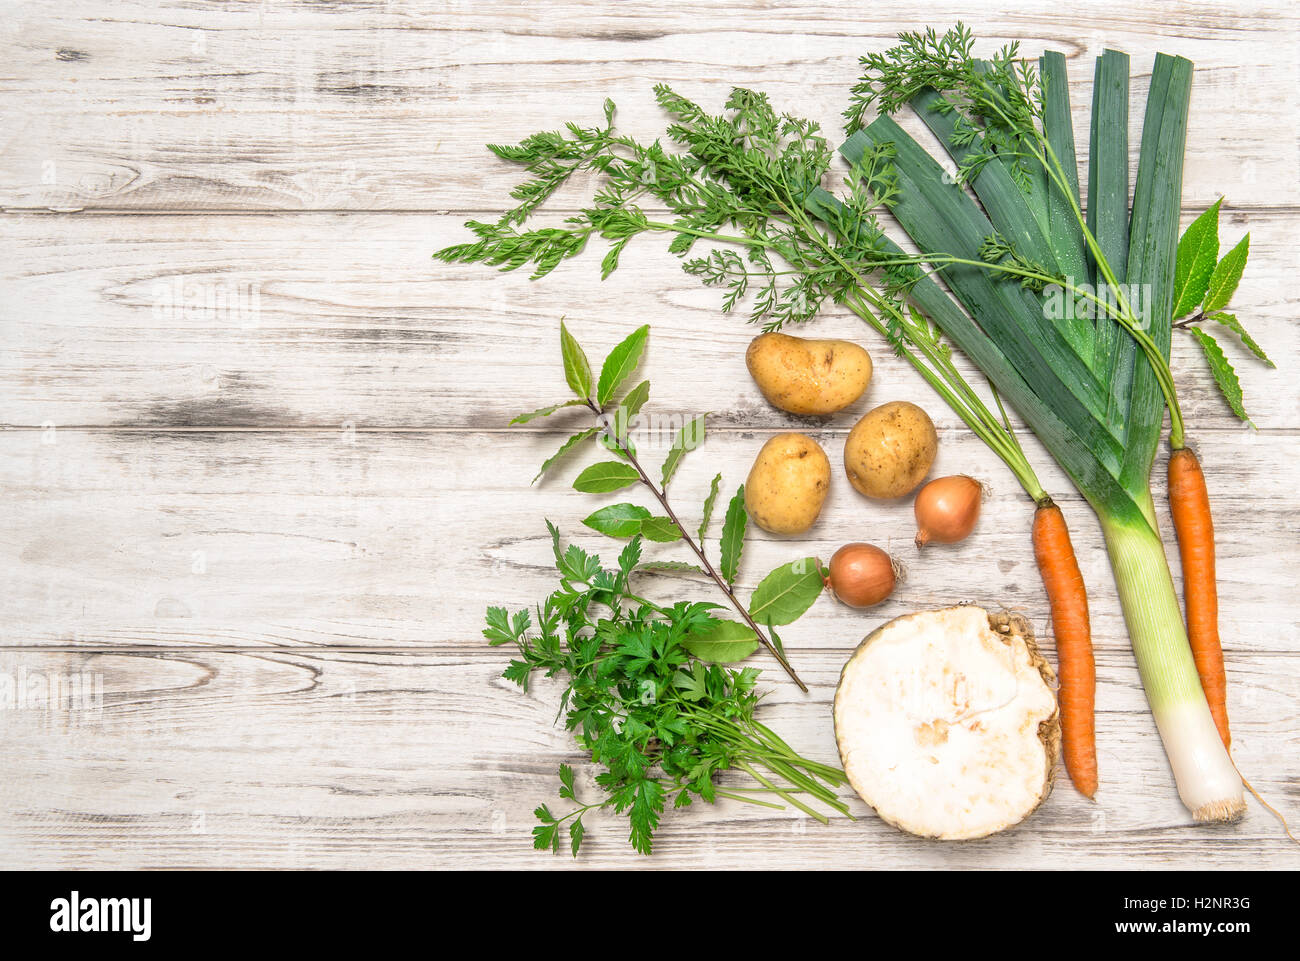 Les légumes frais biologiques. Poireau, carotte, oignon, persil, pommes de terre, céleri-rave, laurier feuilles. L'alimentation saine Banque D'Images